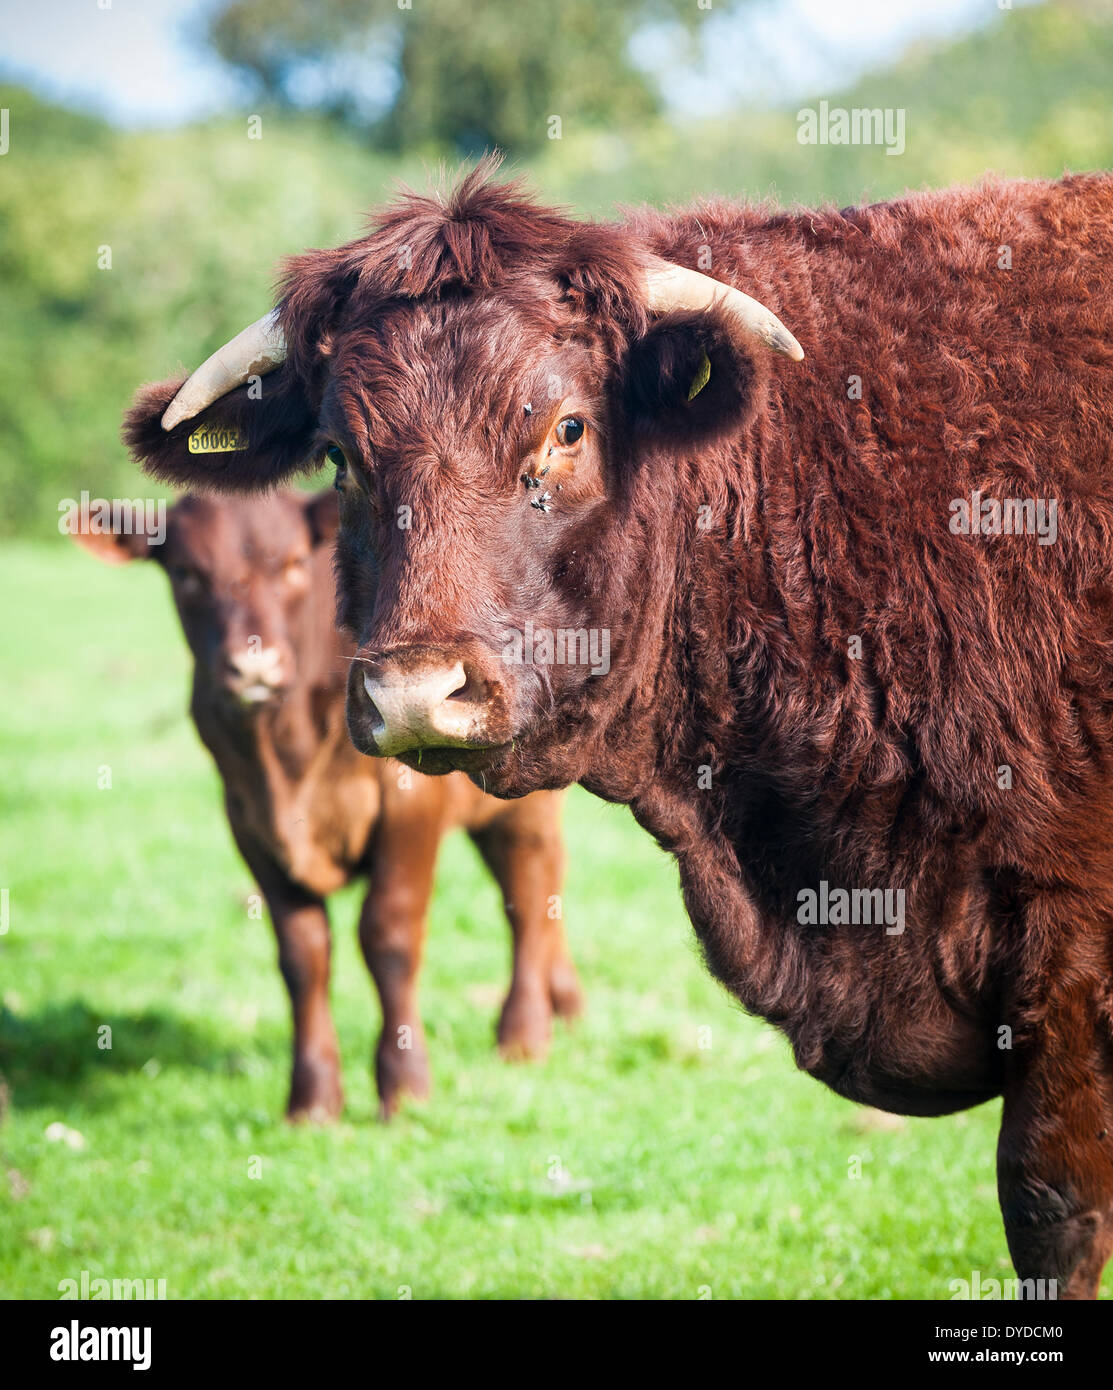 Red Ruby Devon cattle in a field. Stock Photo